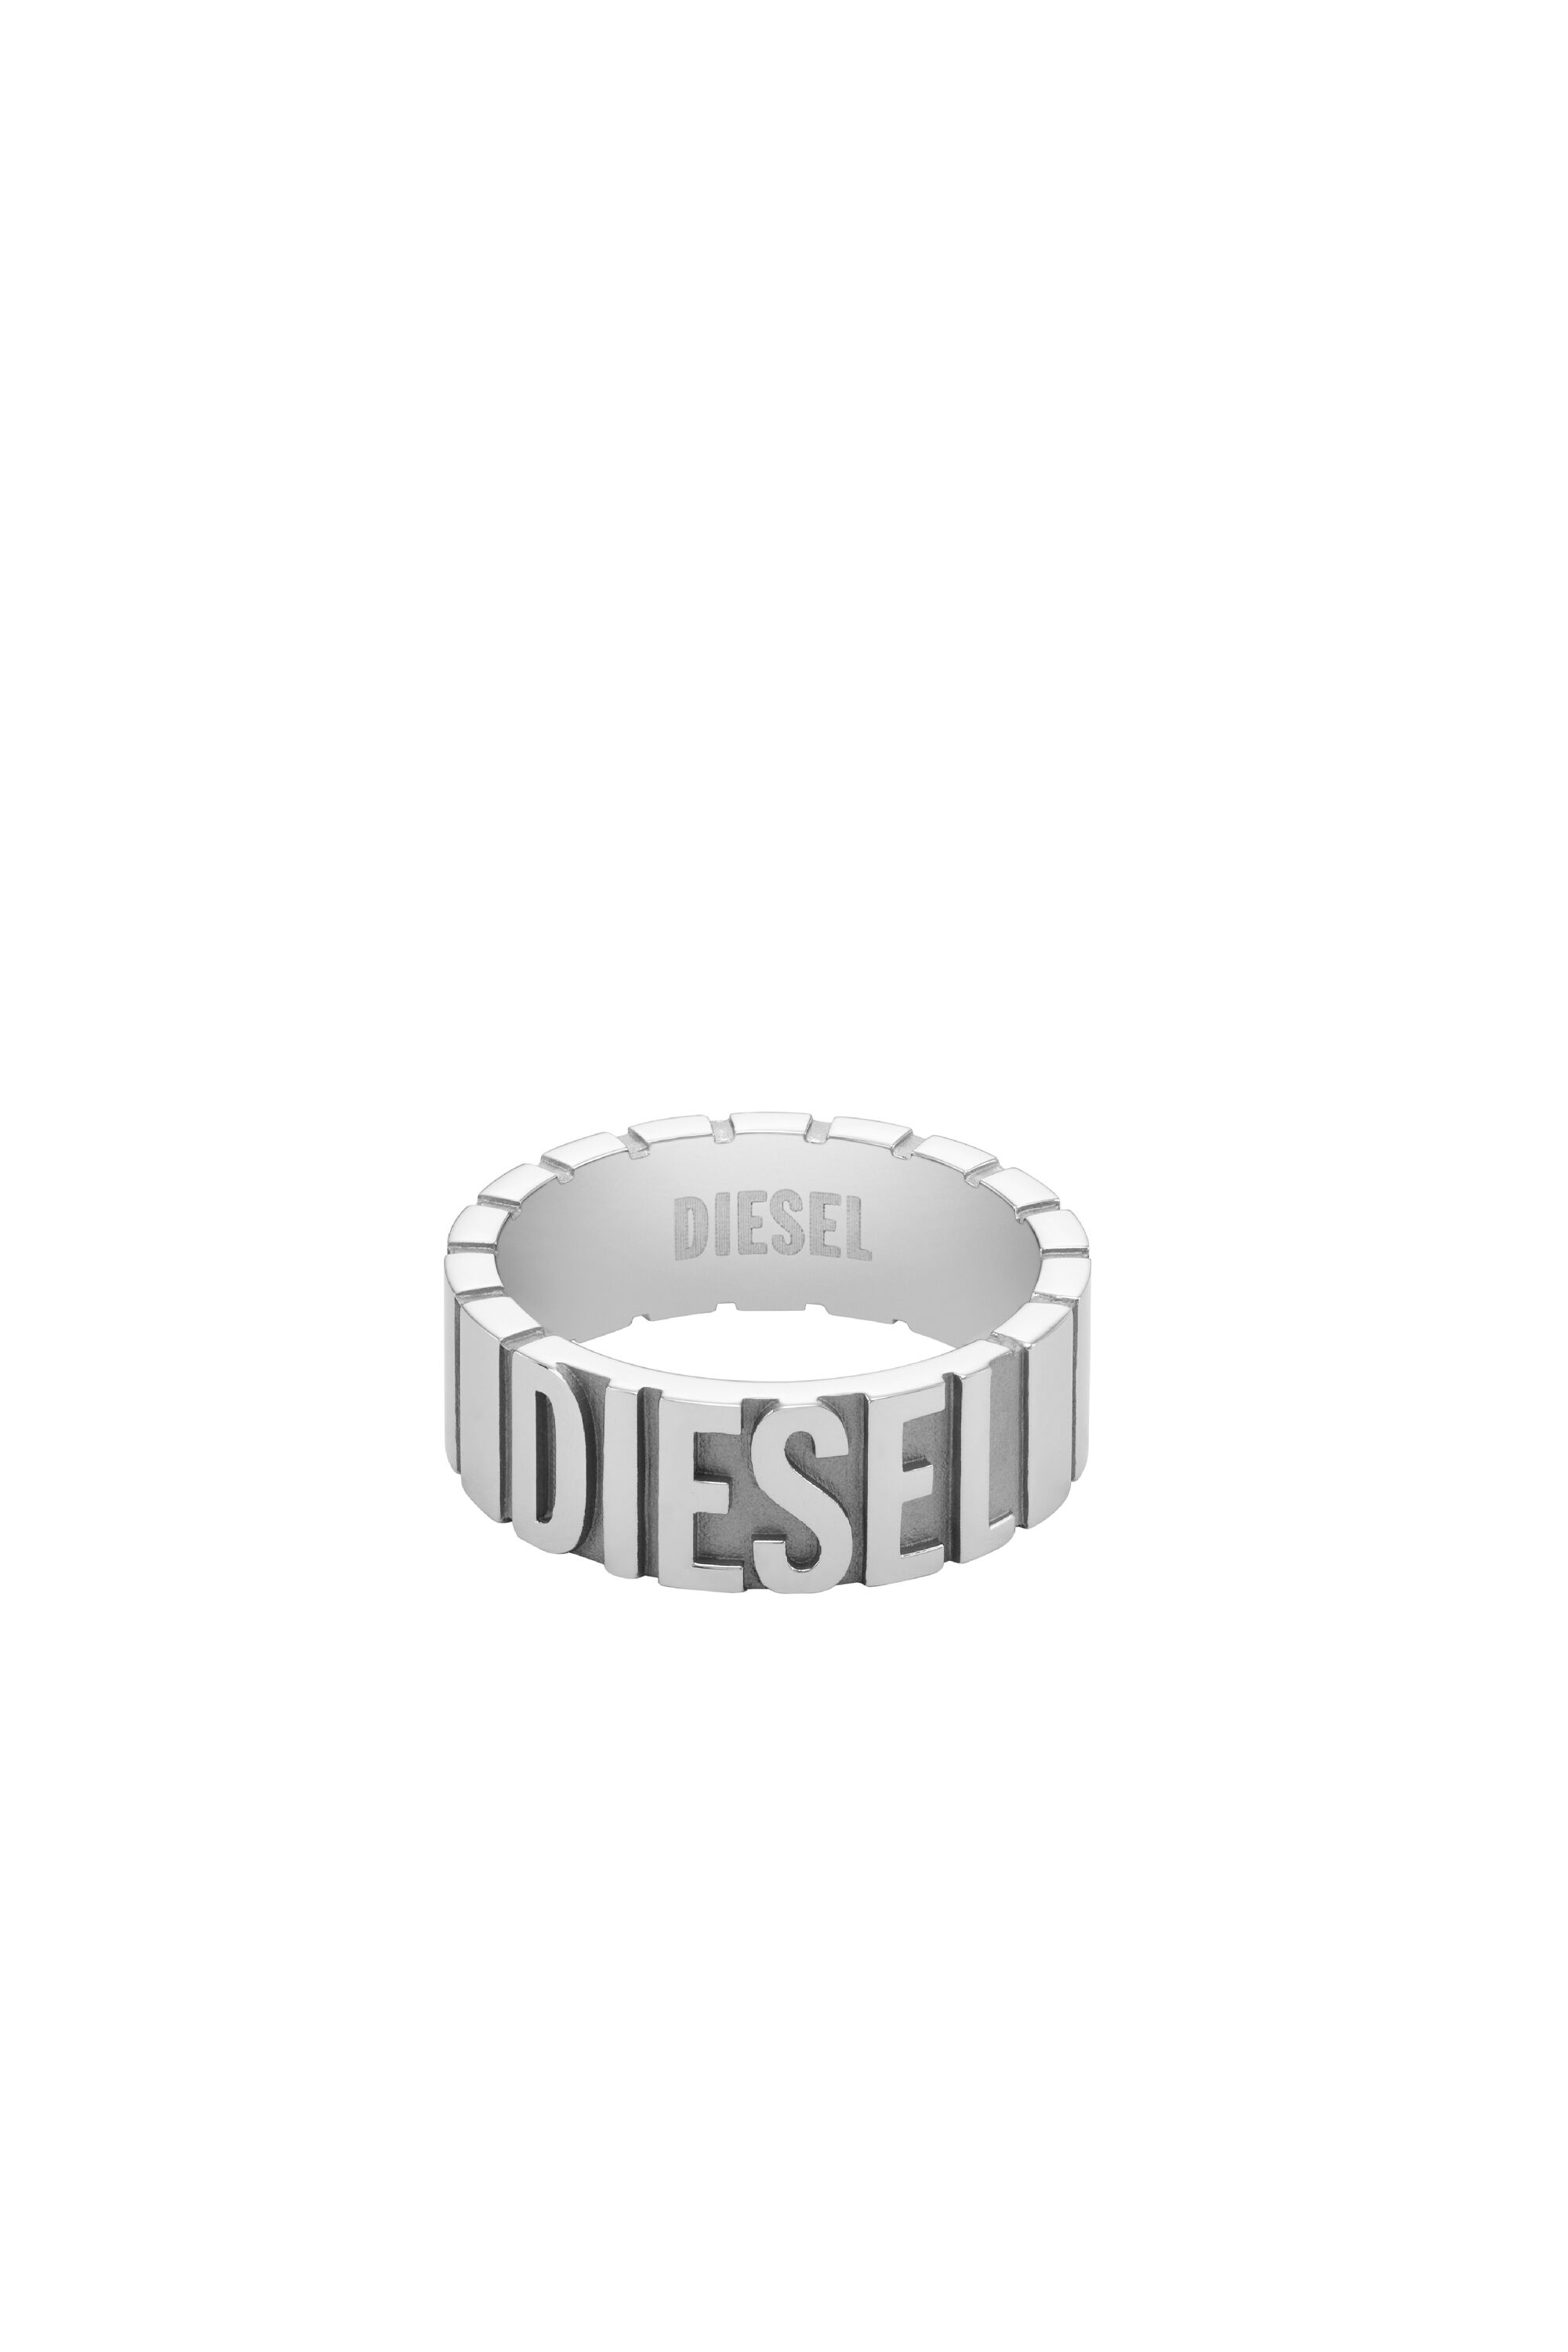 Diesel - DX1390, Silber - Image 2